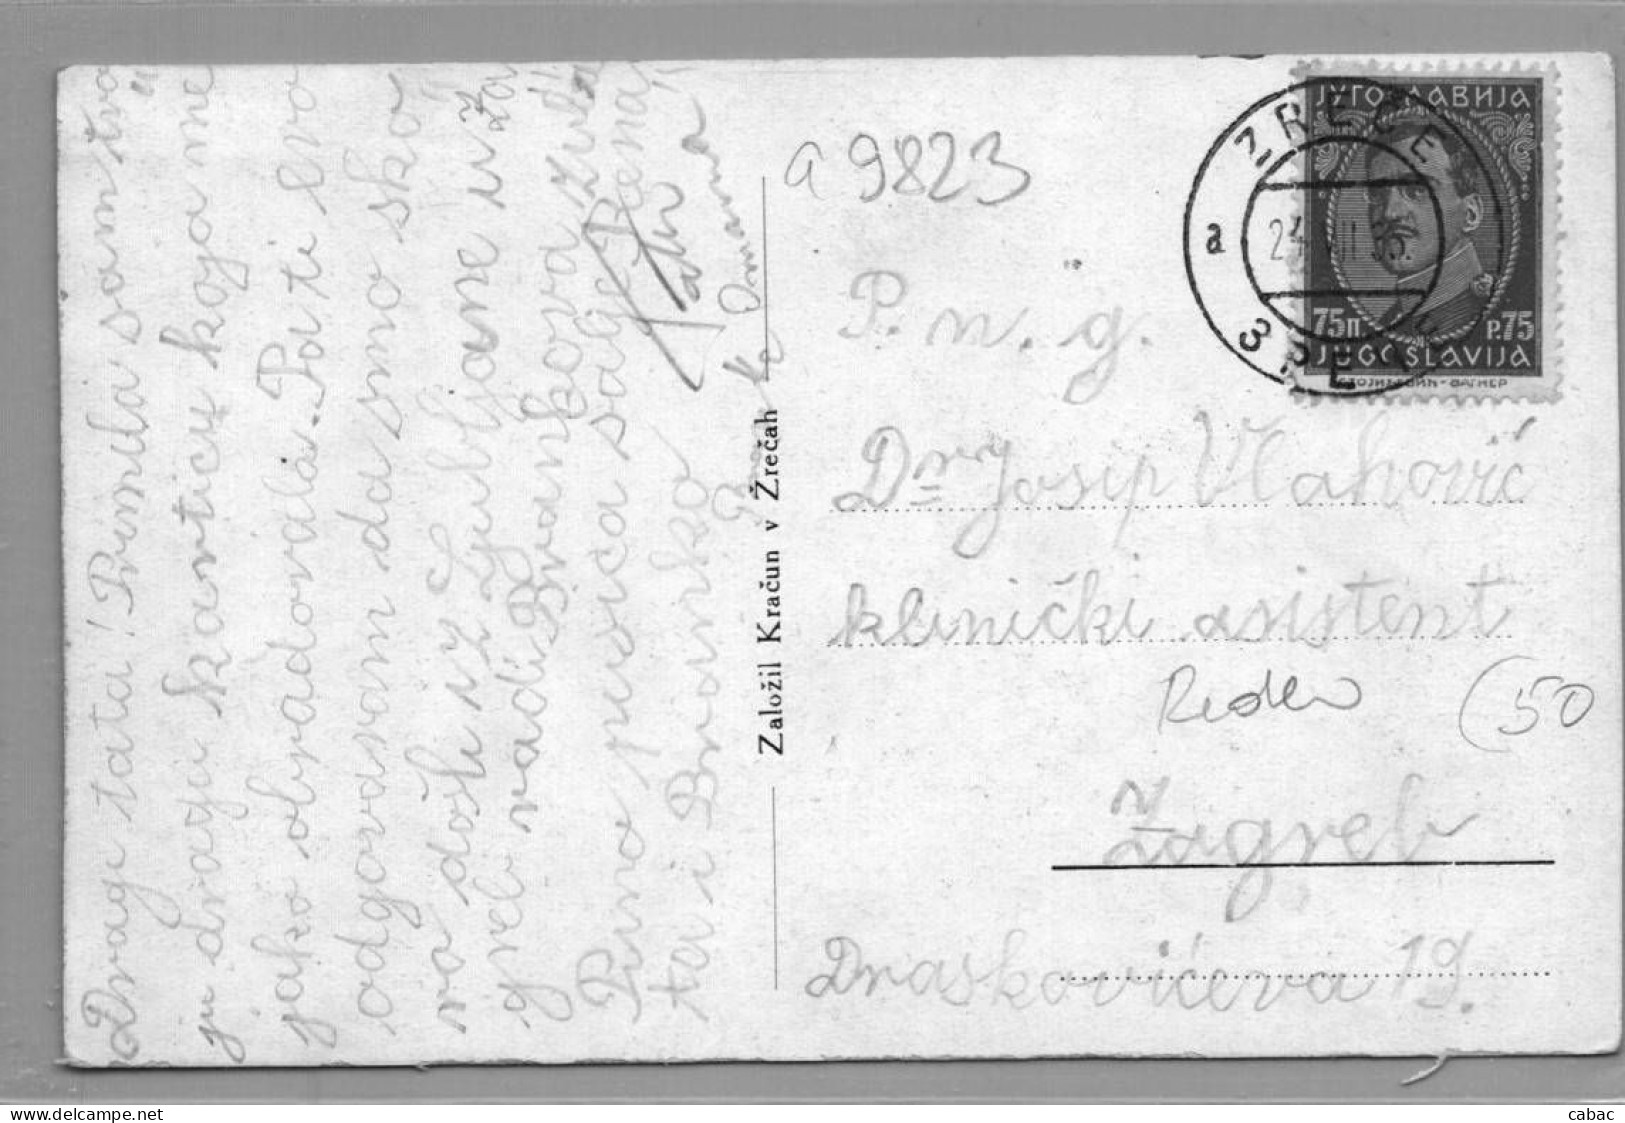 Zreče, 1935, Kompletna, Zal. Kračun, Štajerska, Dravinjska Dolina, Dravinja, Slovenija - Slovenia